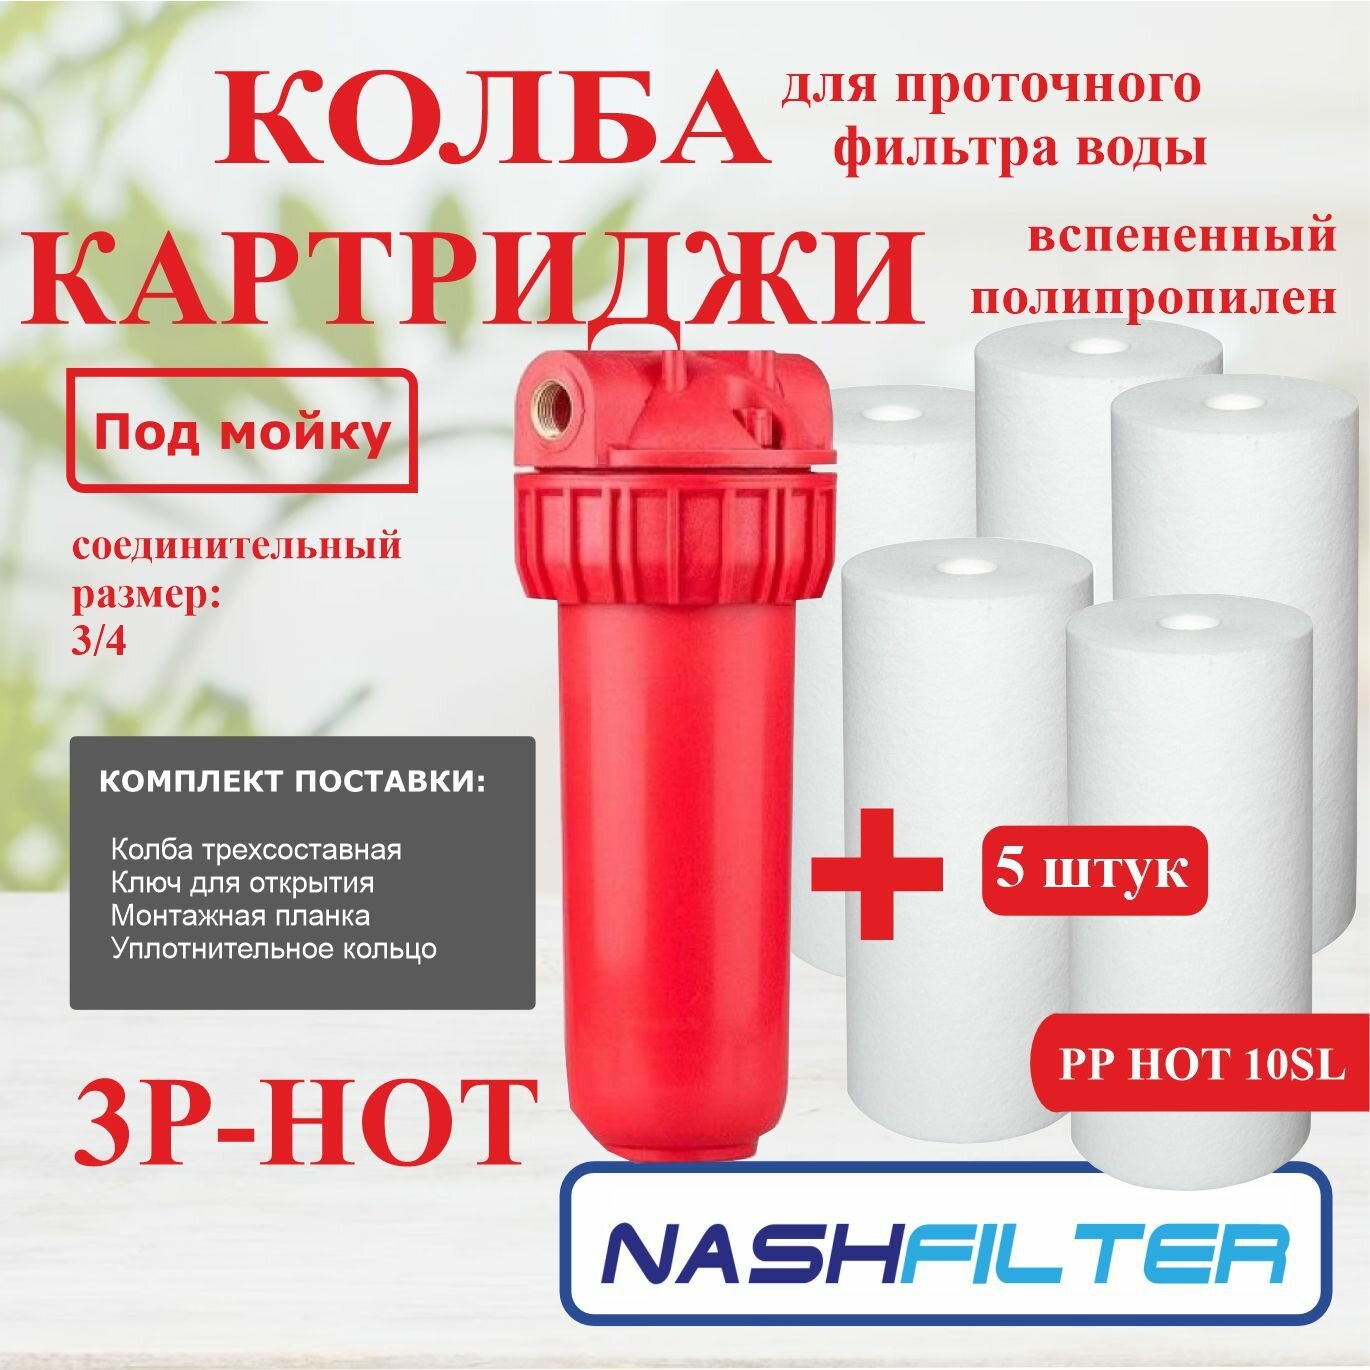 Колба (корпус), проточный фильтр горячей и холодной воды 3Р HOT (из трех частей) (соединительный размер: 3/4) и Картридж вспененный полипропилен для горячей воды РР HOT 10SL (5 штук)